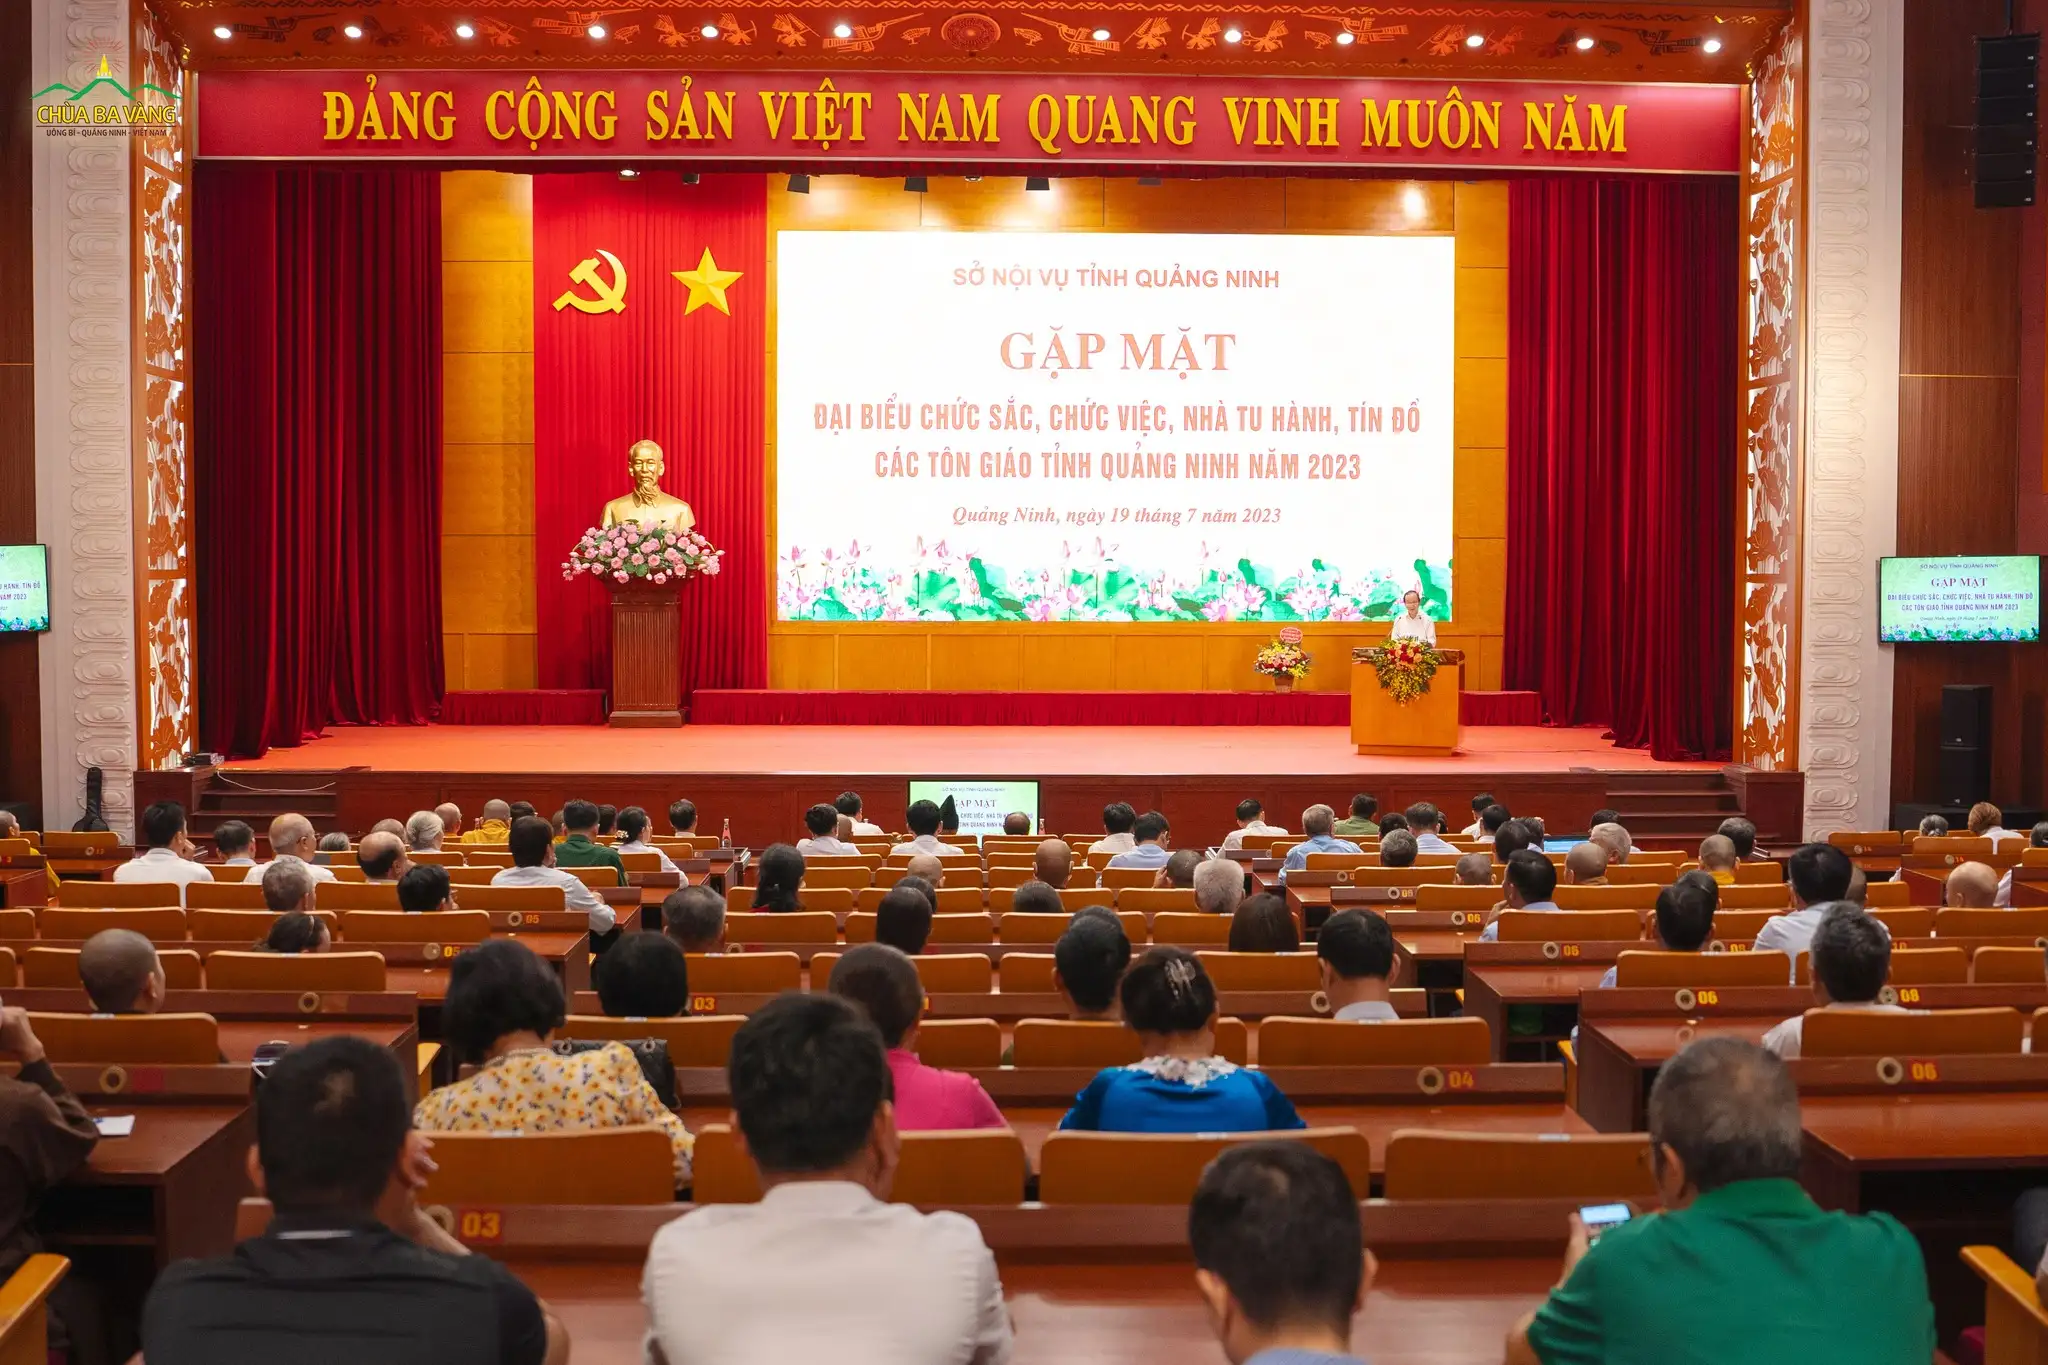 Toàn cảnh hội nghị “Gặp mặt Đại biểu chức sắc, chức việc, nhà tu hành, tín đồ các tôn giáo tỉnh Quảng Ninh năm 2023”